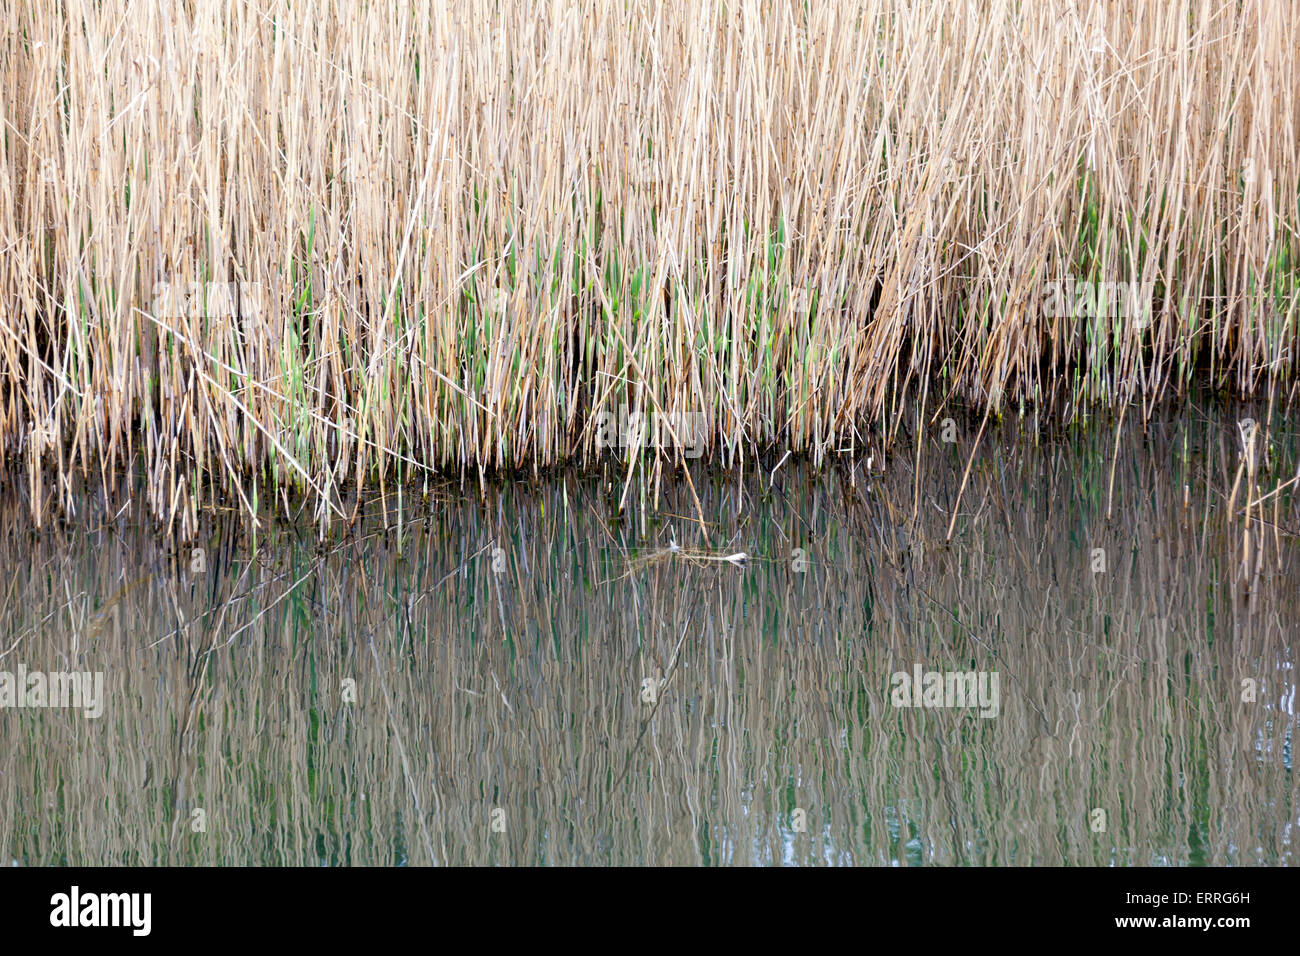 L'herbe haute par le bord de l'étang Banque D'Images